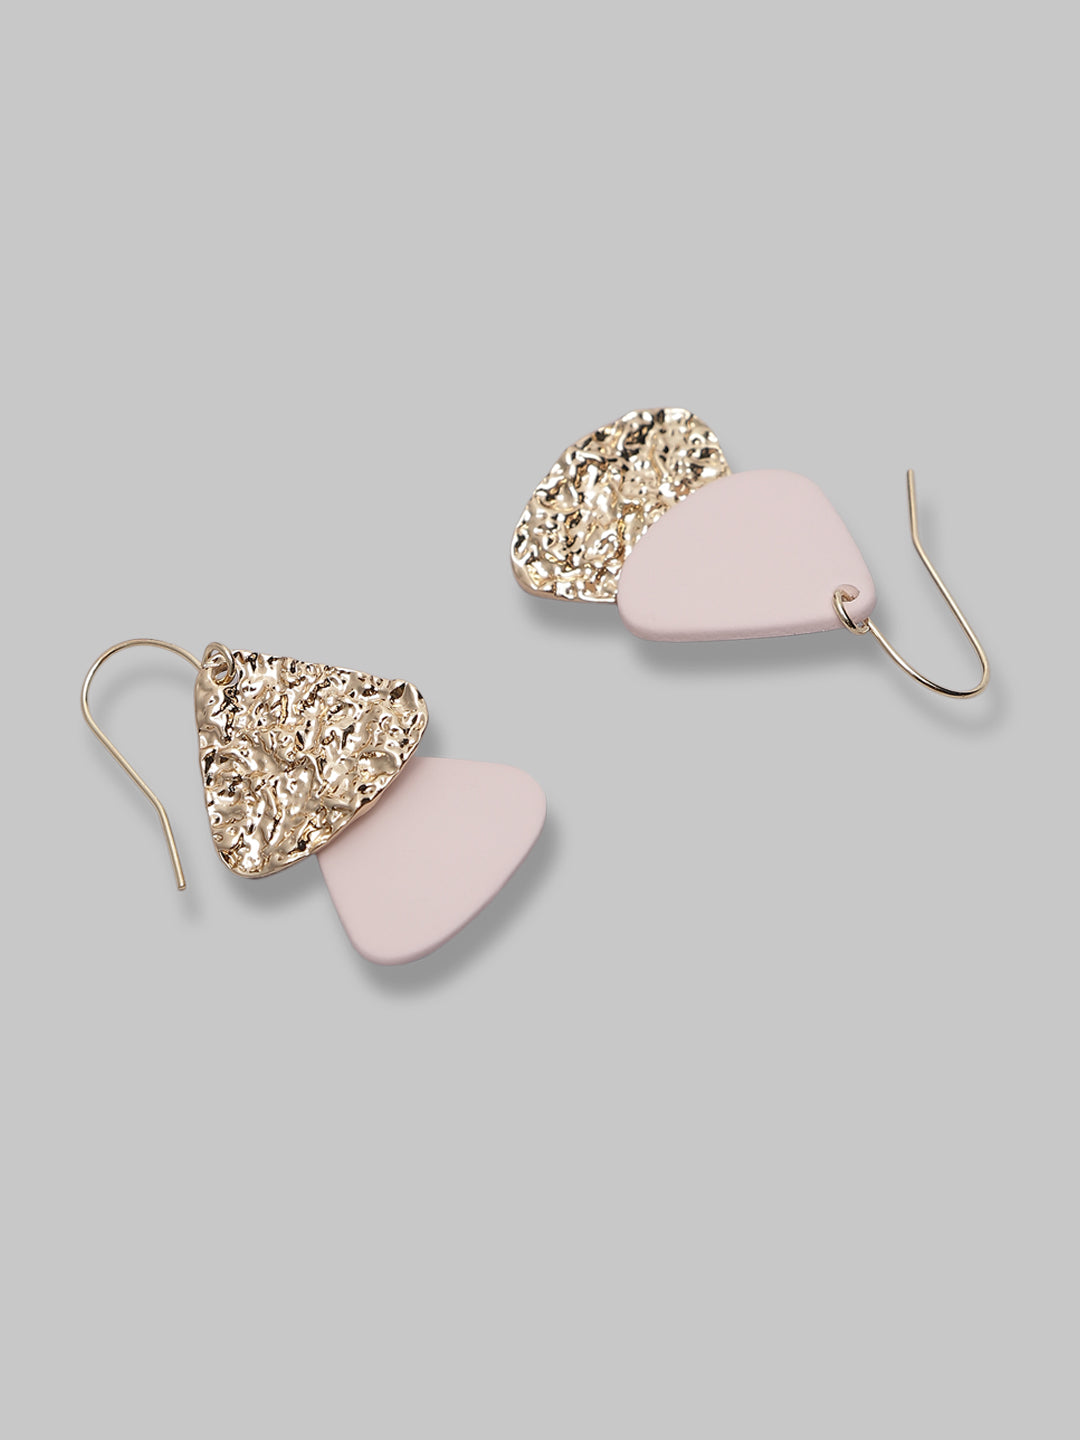 Brass Metal Triangle Teardrop Earrings For Women And Girls